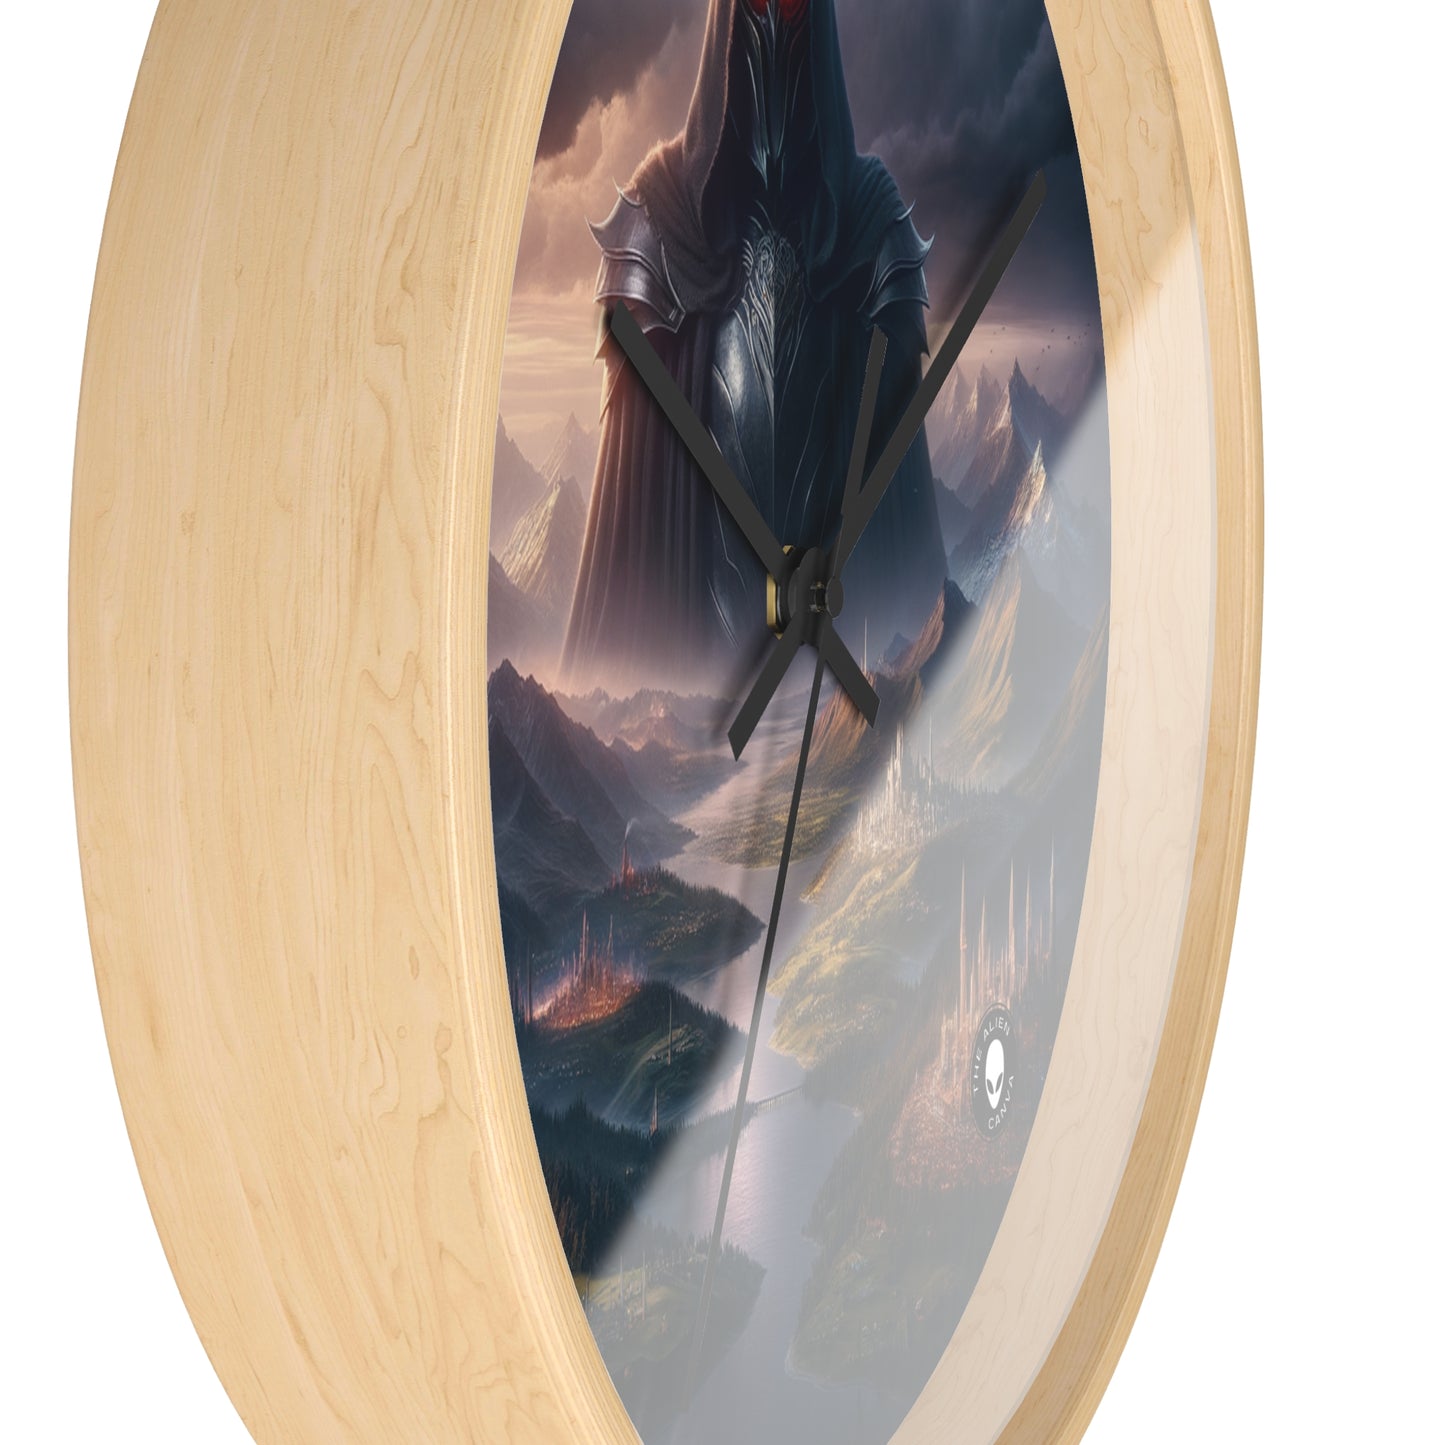 "La Réclamation de Sauron : L'Obscurcissement de la Terre du Milieu" - L'Horloge Murale Alien